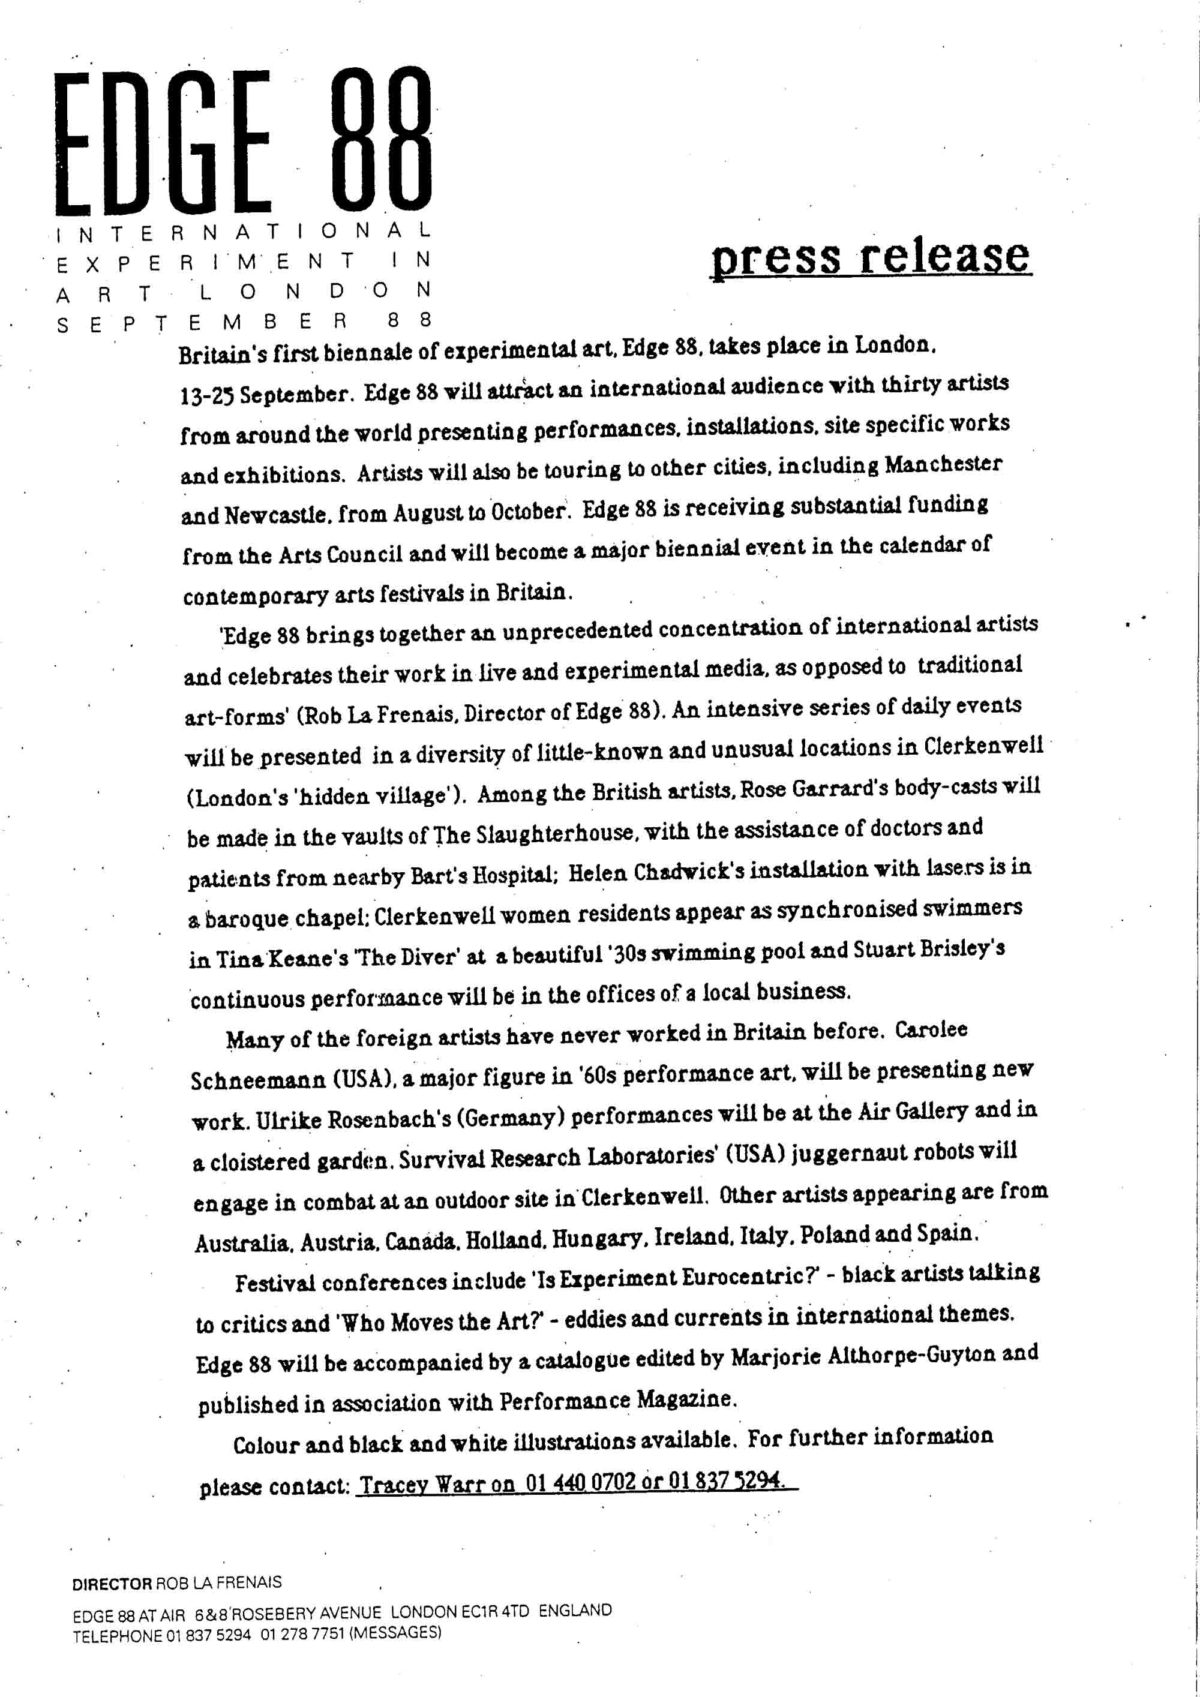 Press Release, 1988